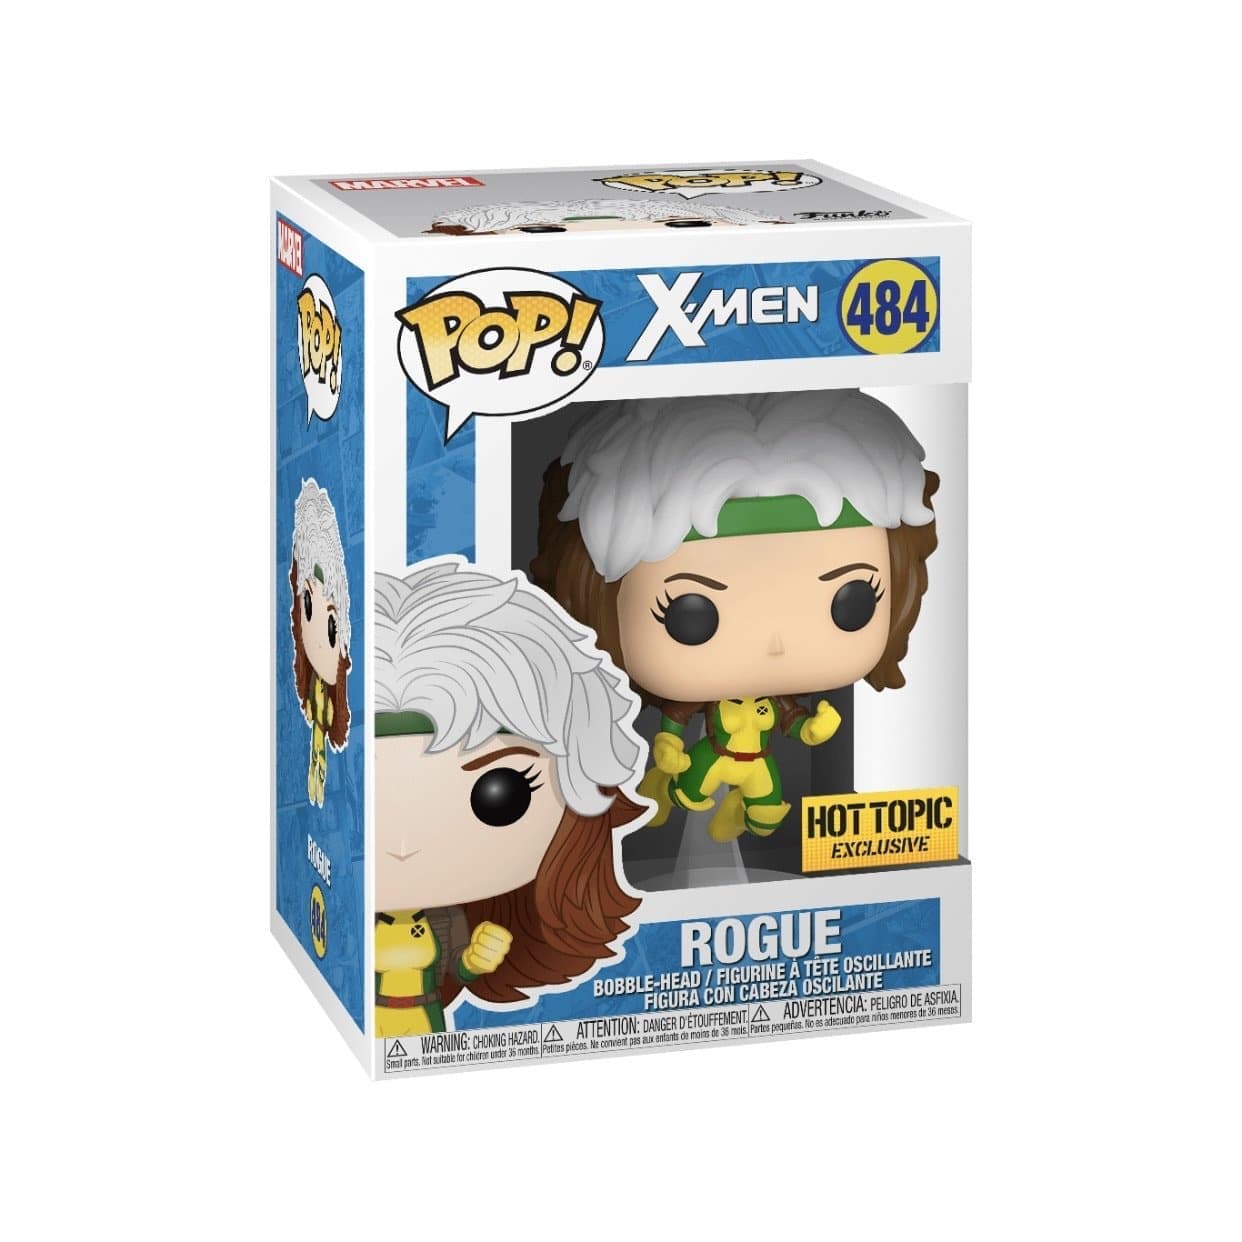 X-men - Rogue (Flying) Hot Topic Exclusive - Pop Figures